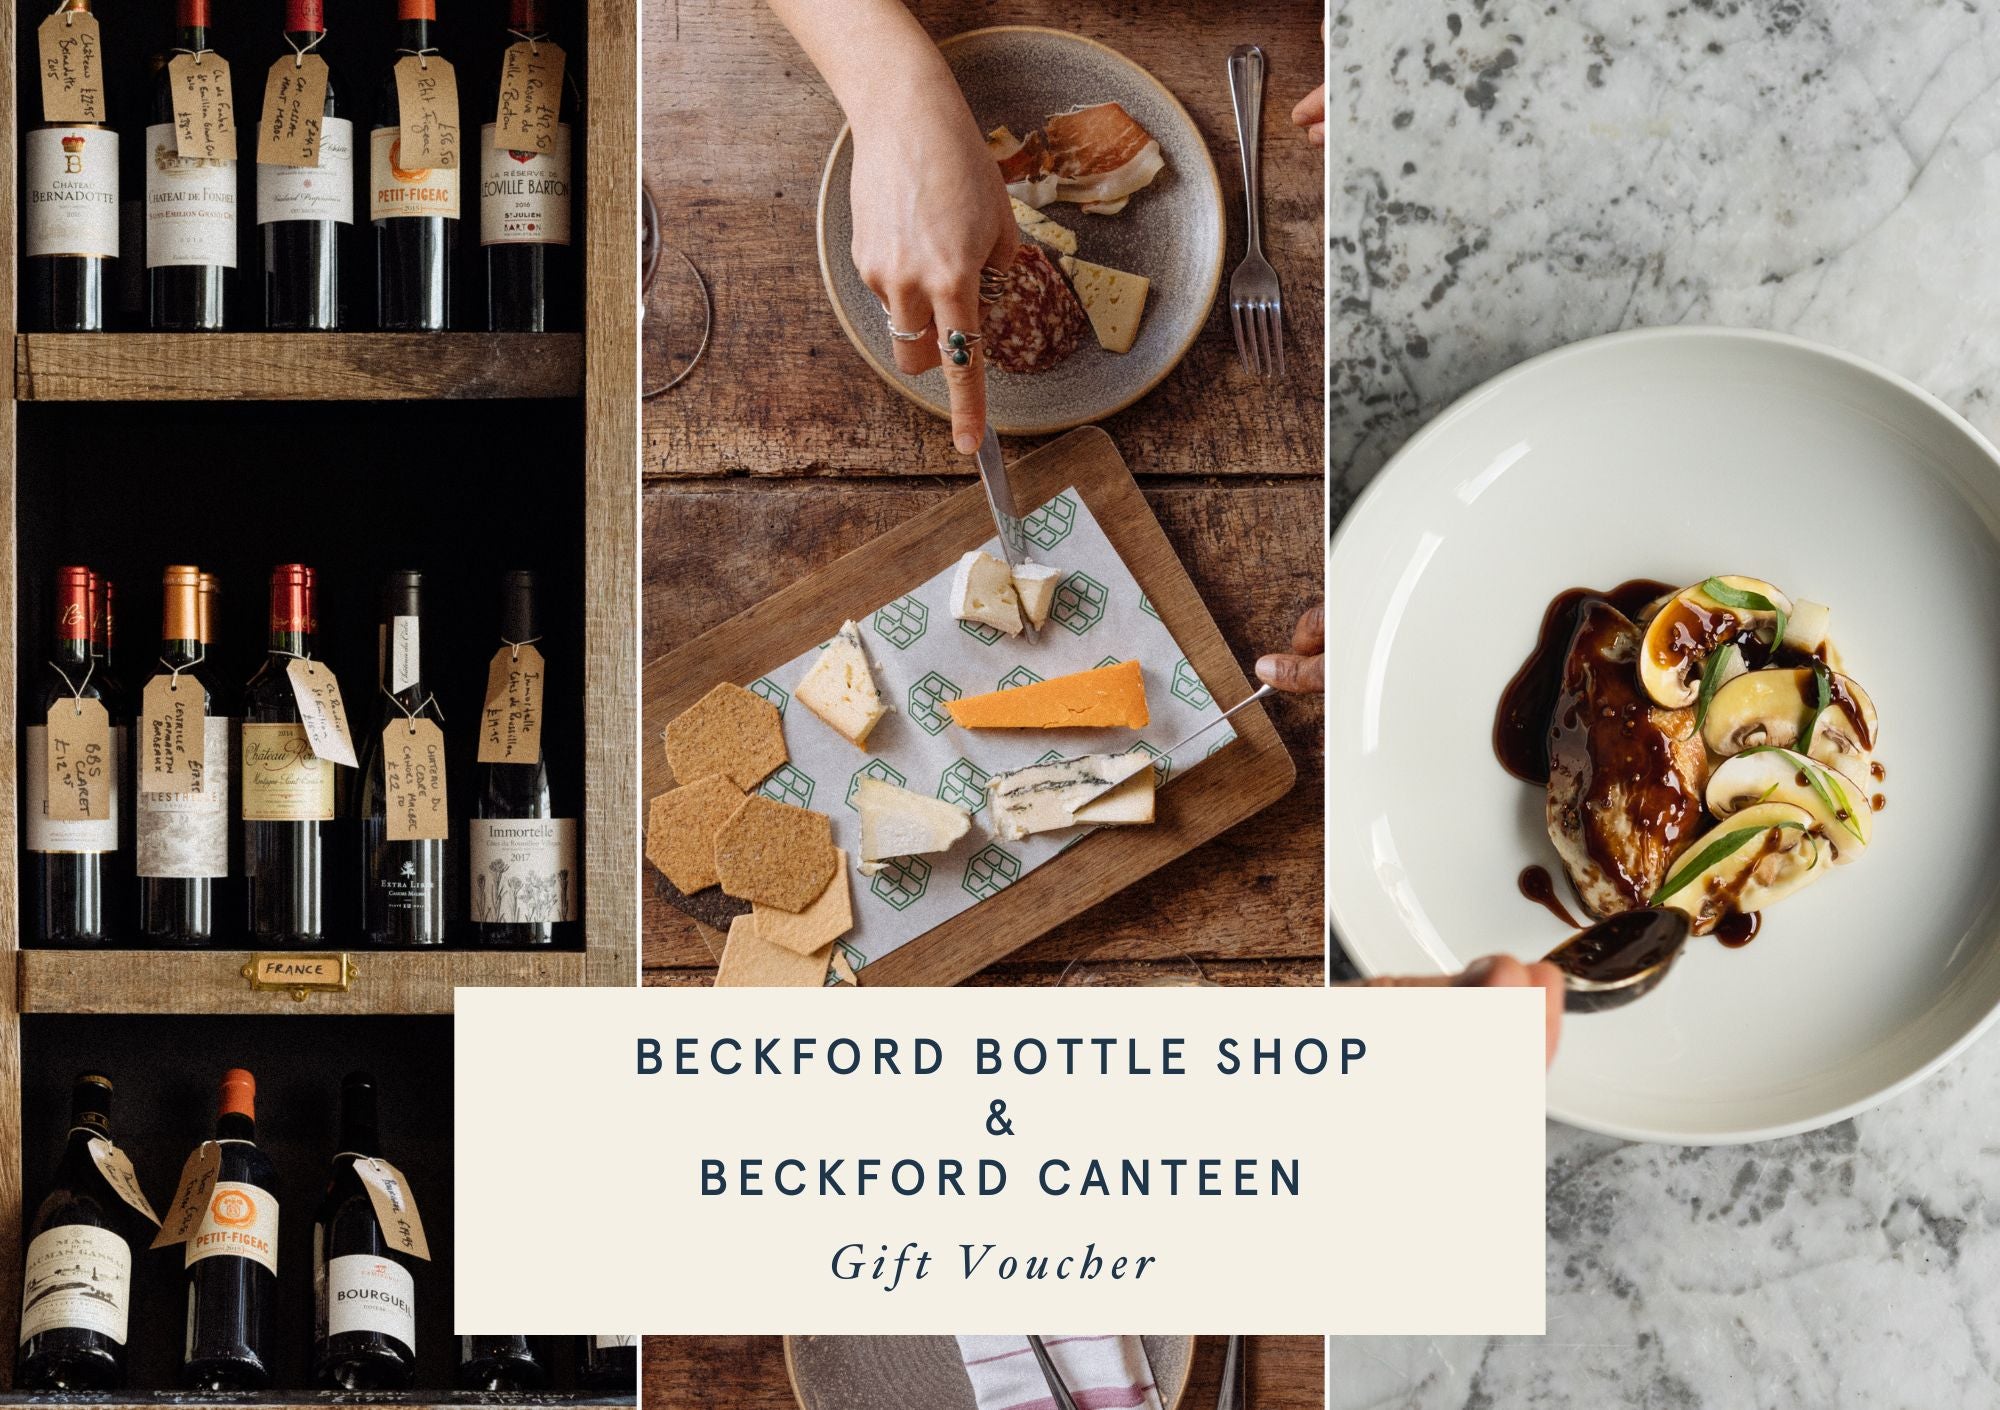 Beckford Bottle Shop & Beckford Canteen Gift Voucher